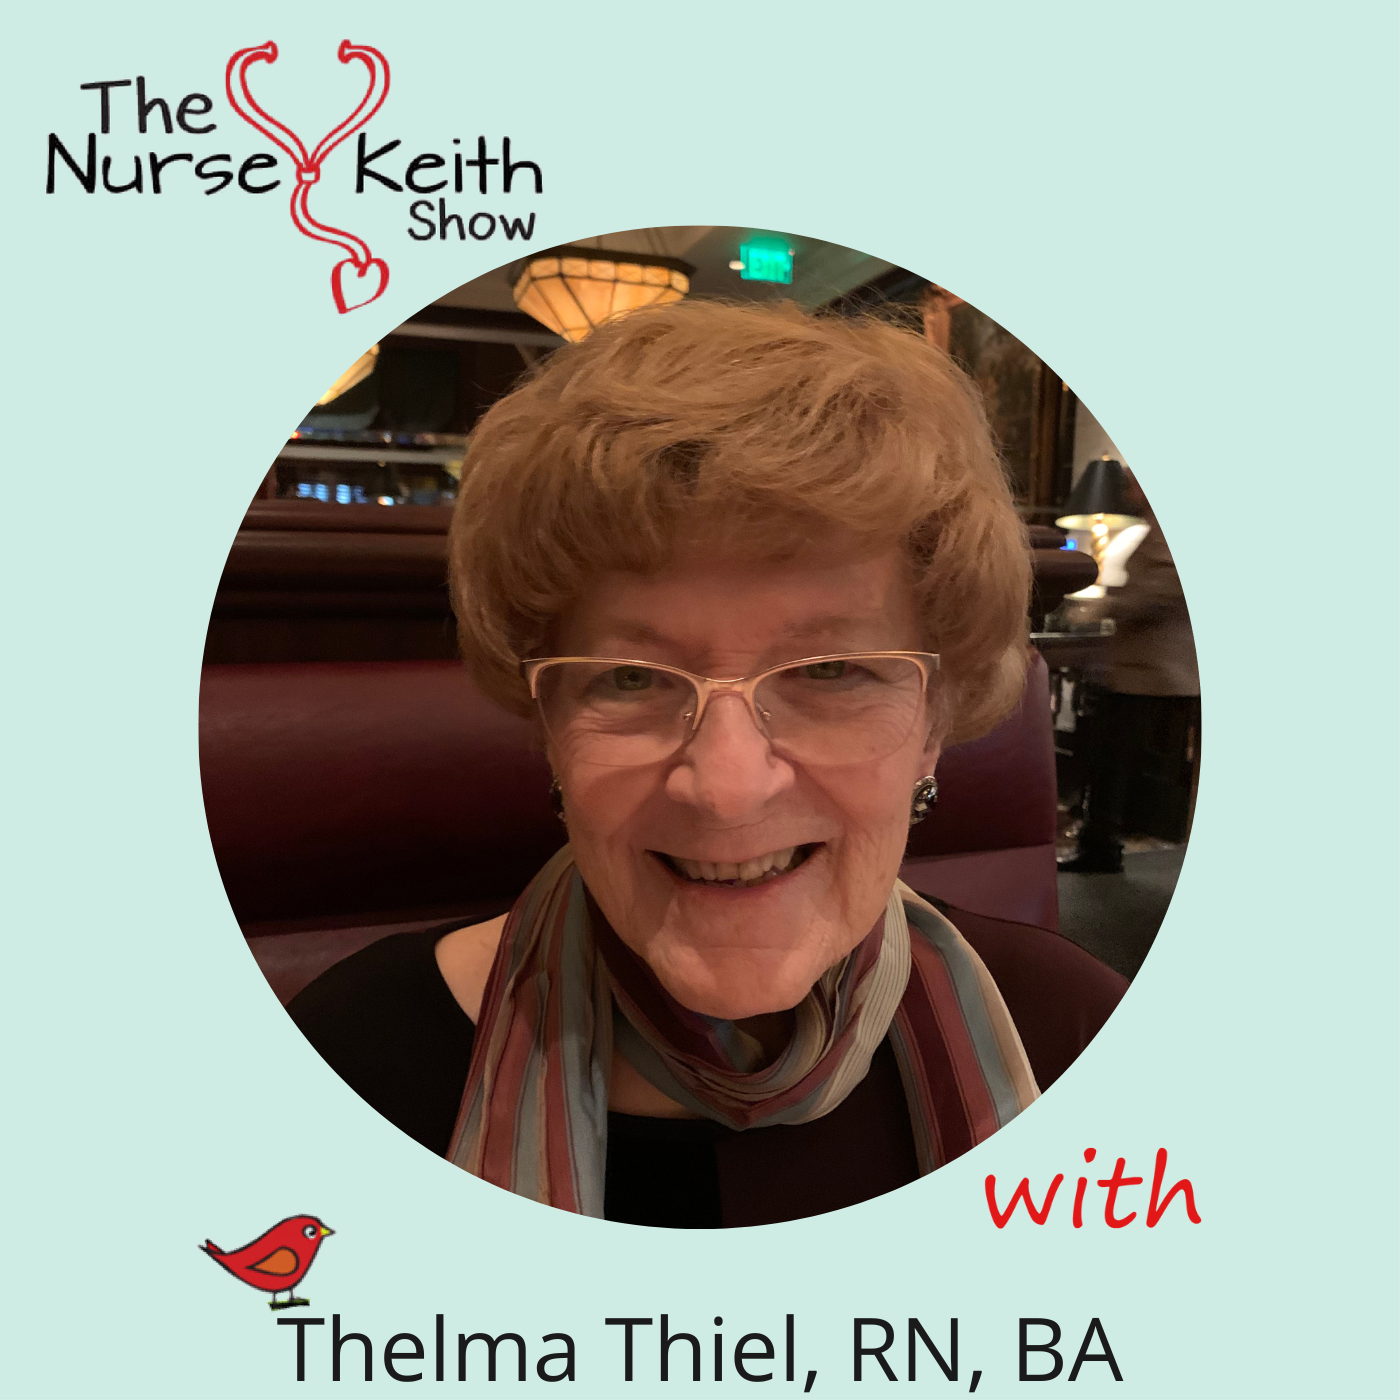 Thelma Thiel, RN, BA